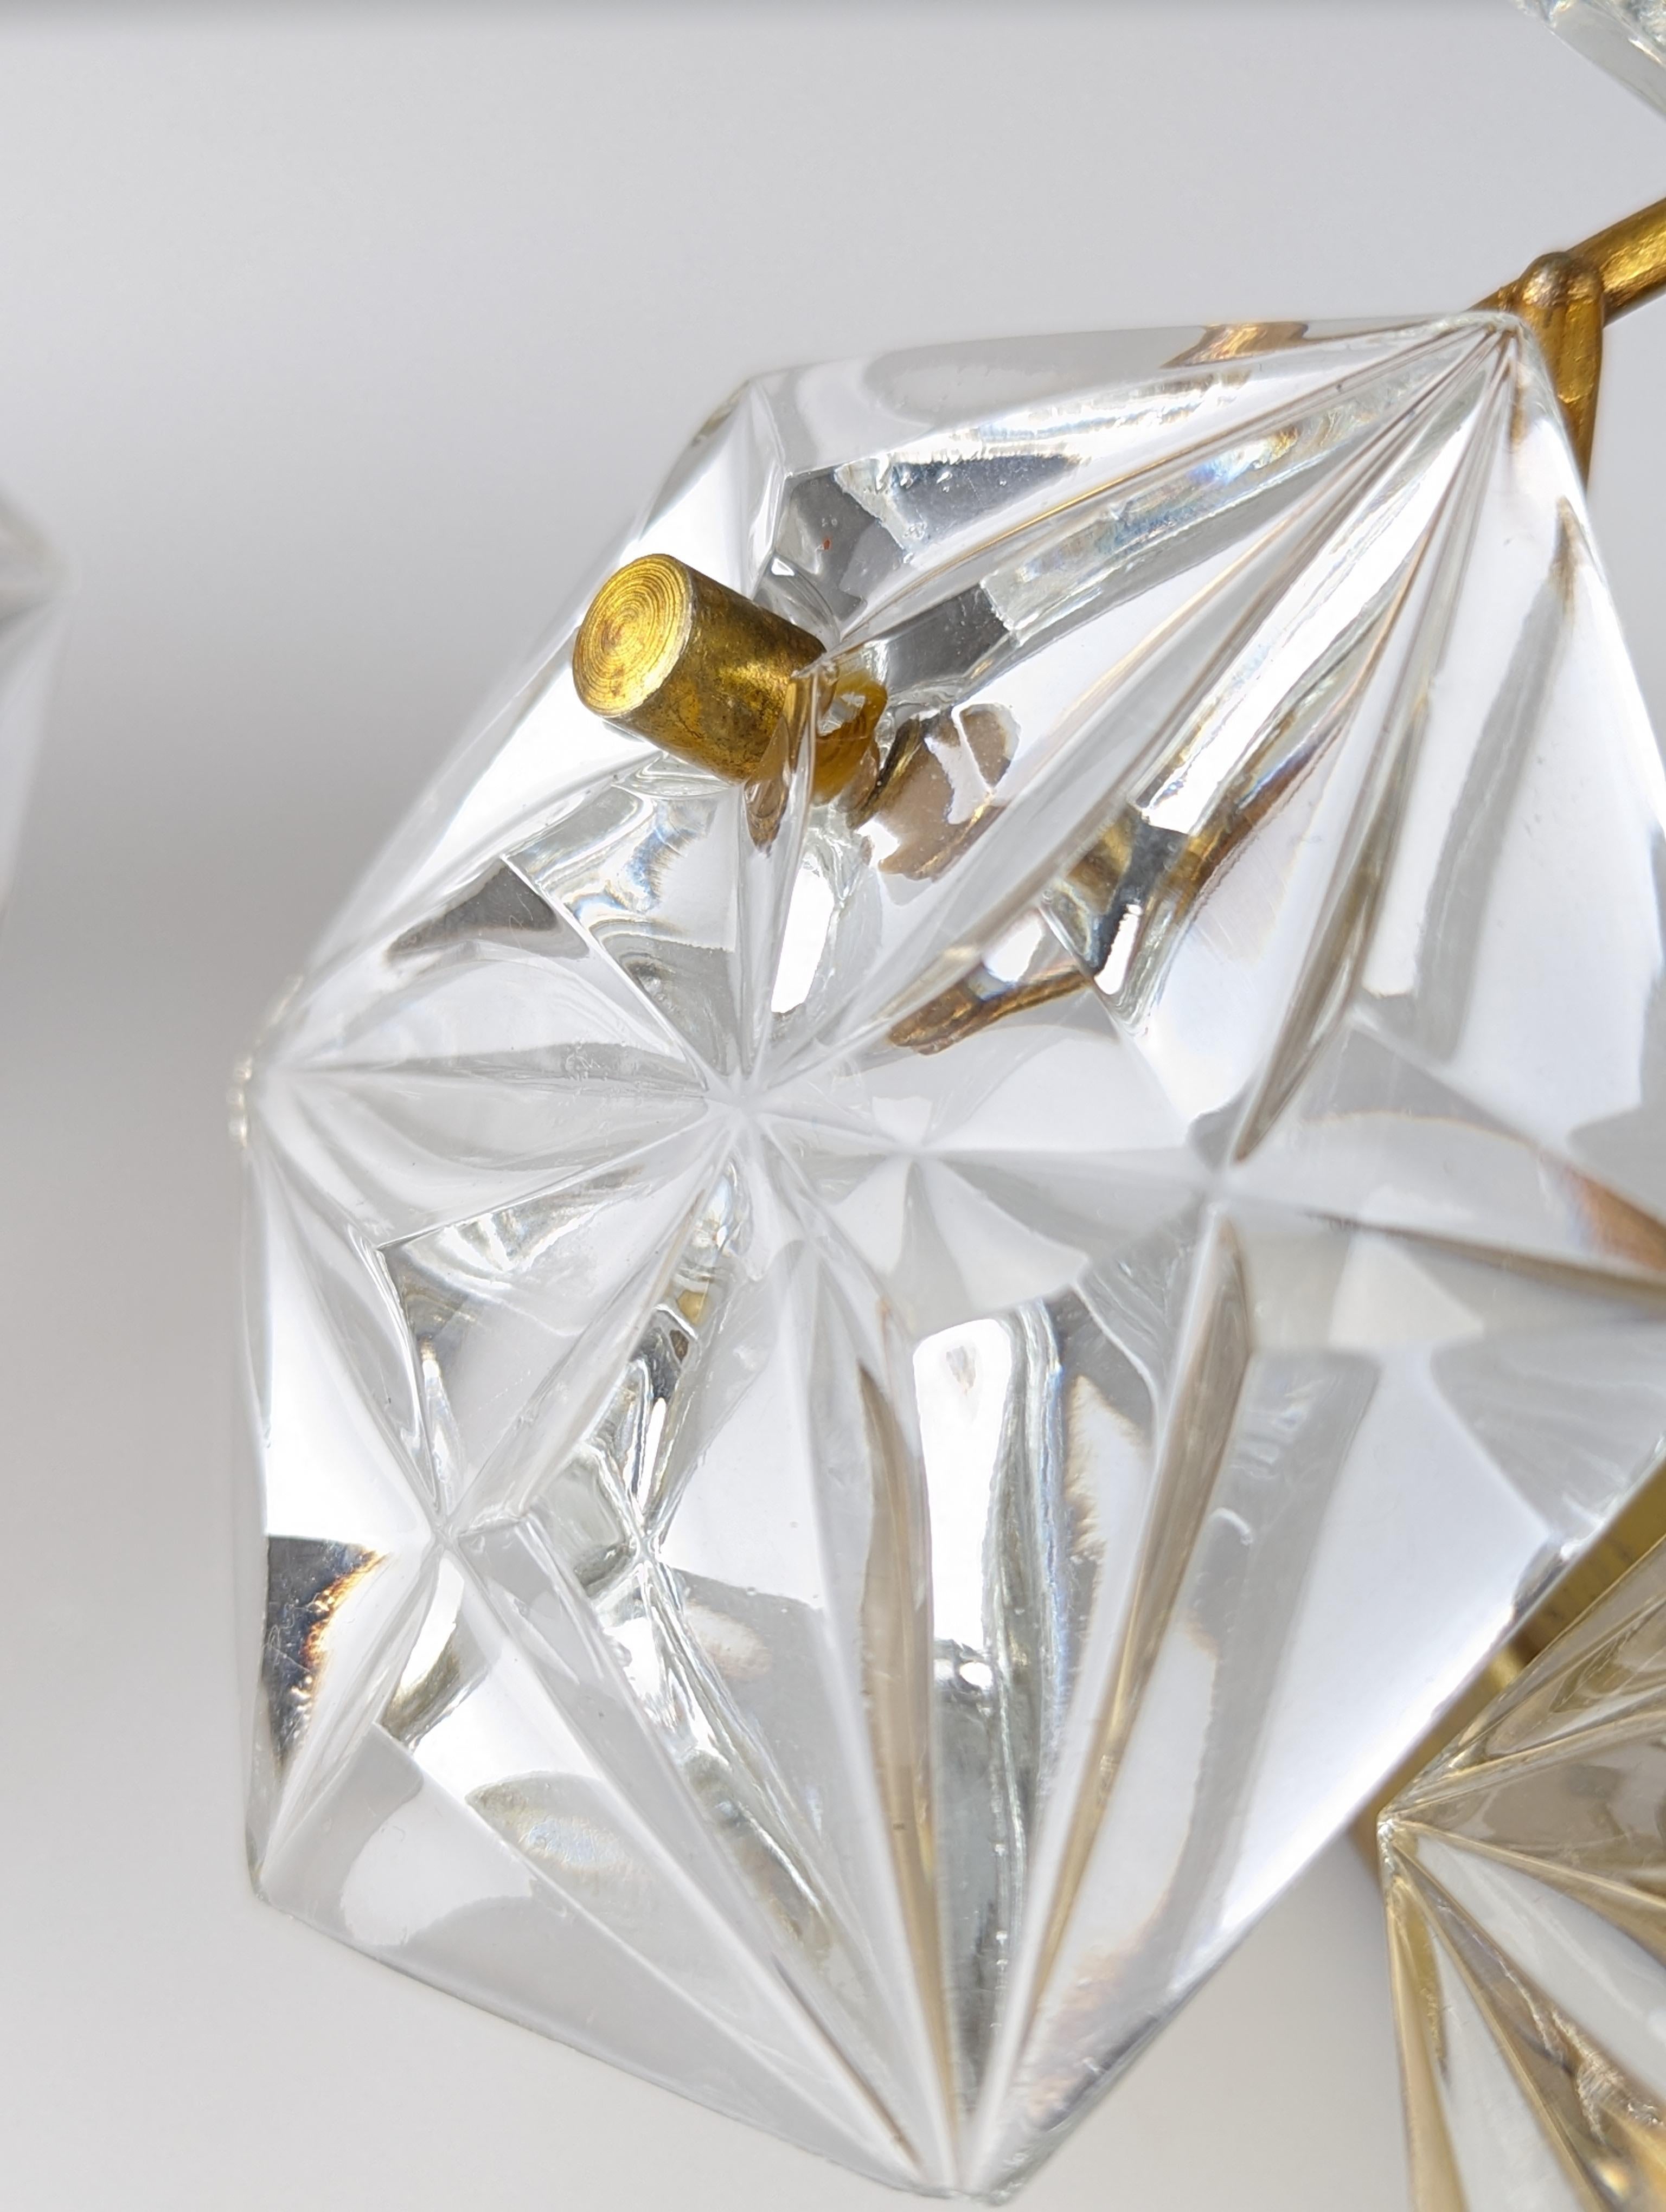 Elegante sechseckige Kinkeldey-Kristallleuchter, ein wahres Juwel des deutschen Designs der 70er Jahre. Jede Leuchte besteht aus geschliffenen sechseckigen Kristallen, die das Licht auf spektakuläre Weise einfangen und brechen und so eine helle und